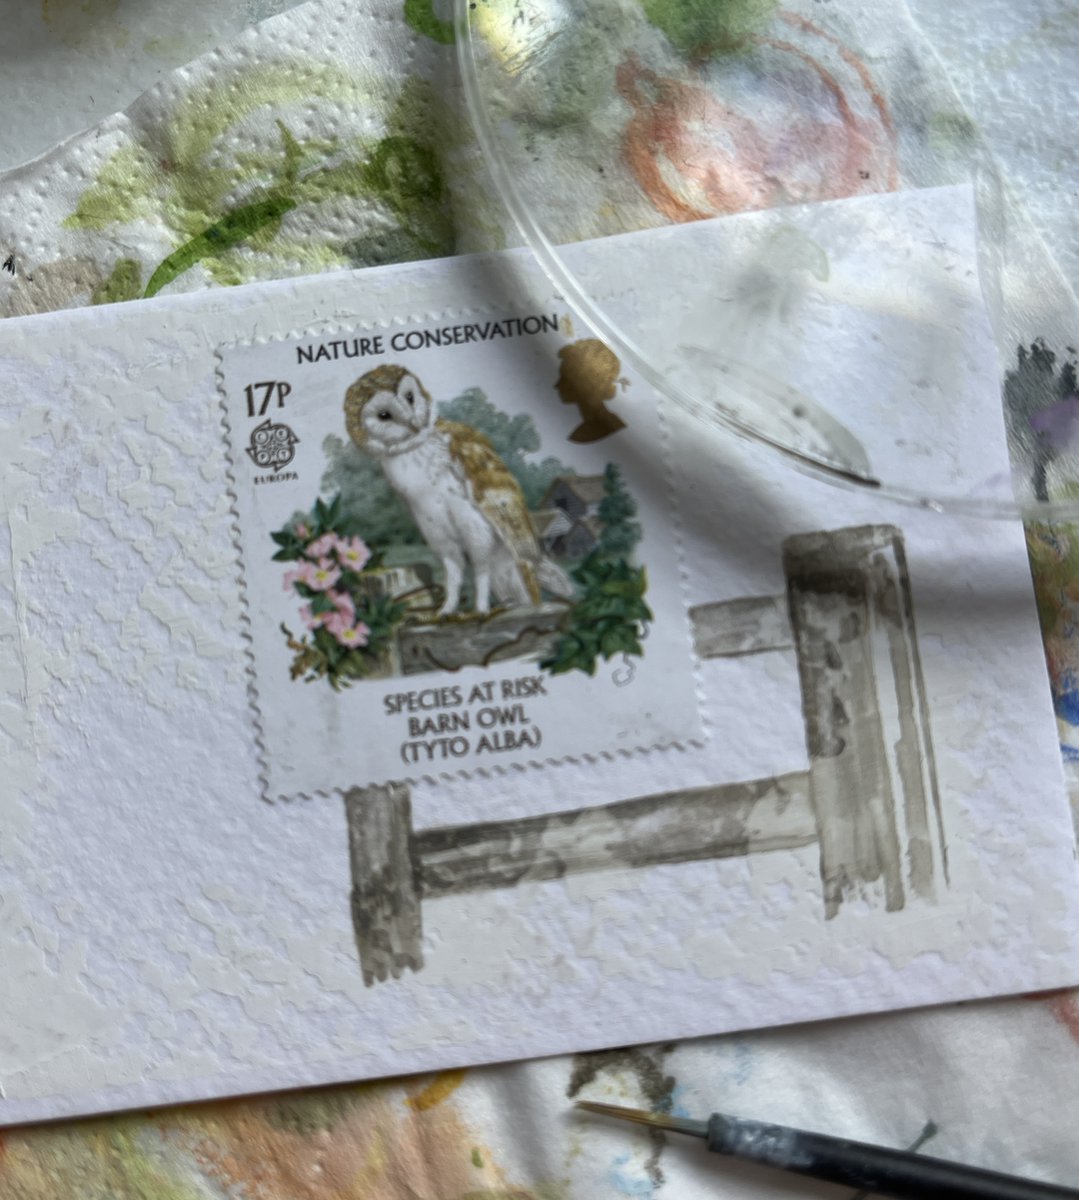 Barn Owl  - postage stamp painting 
Work in progress
DM for details 
#barnowls #barnowl #speciesatrisk #art 
#GBpostagestamps #vintagestamps #philately